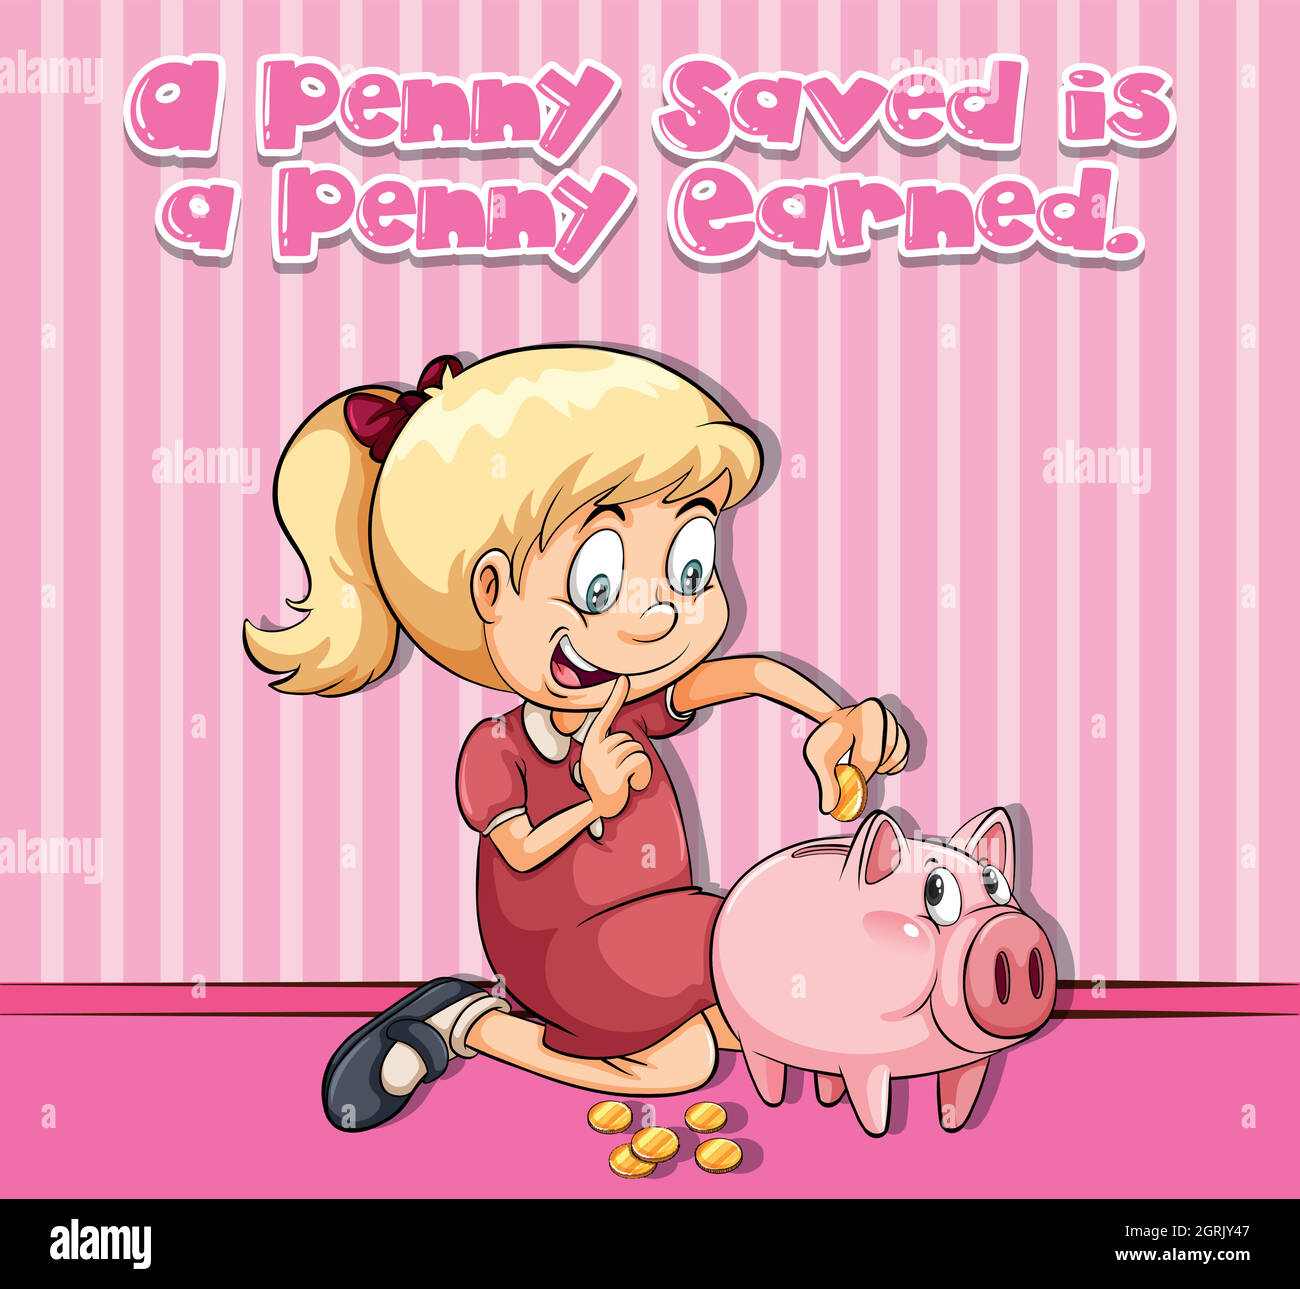 Il poster di idioma per il penny salvato è guadagnato il penny Illustrazione Vettoriale